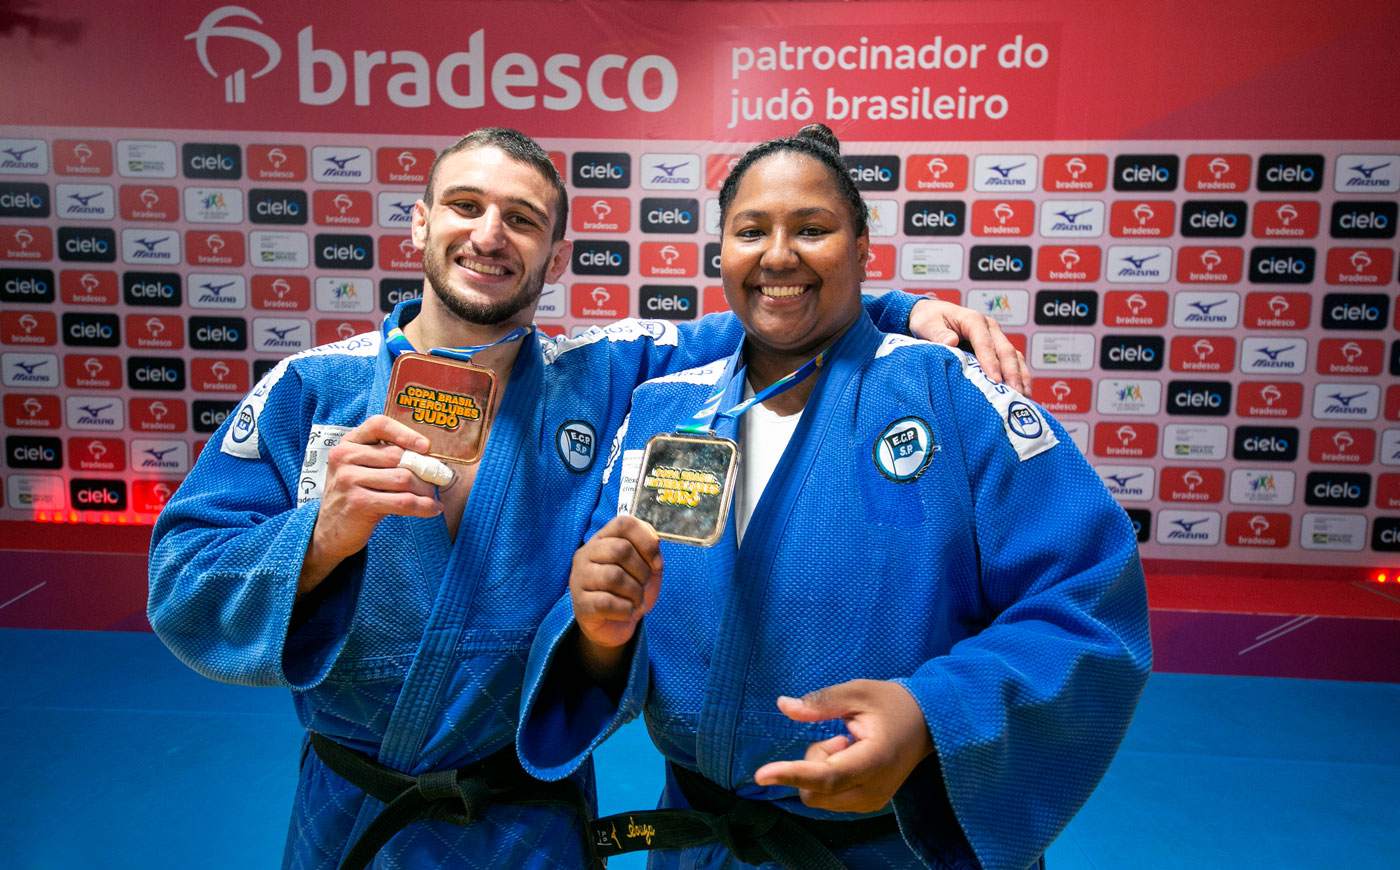 Brasil busca medalha no triathlon por equipe. Com dois atletas pinheirenses  e o técnico - Esporte Clube Pinheiros